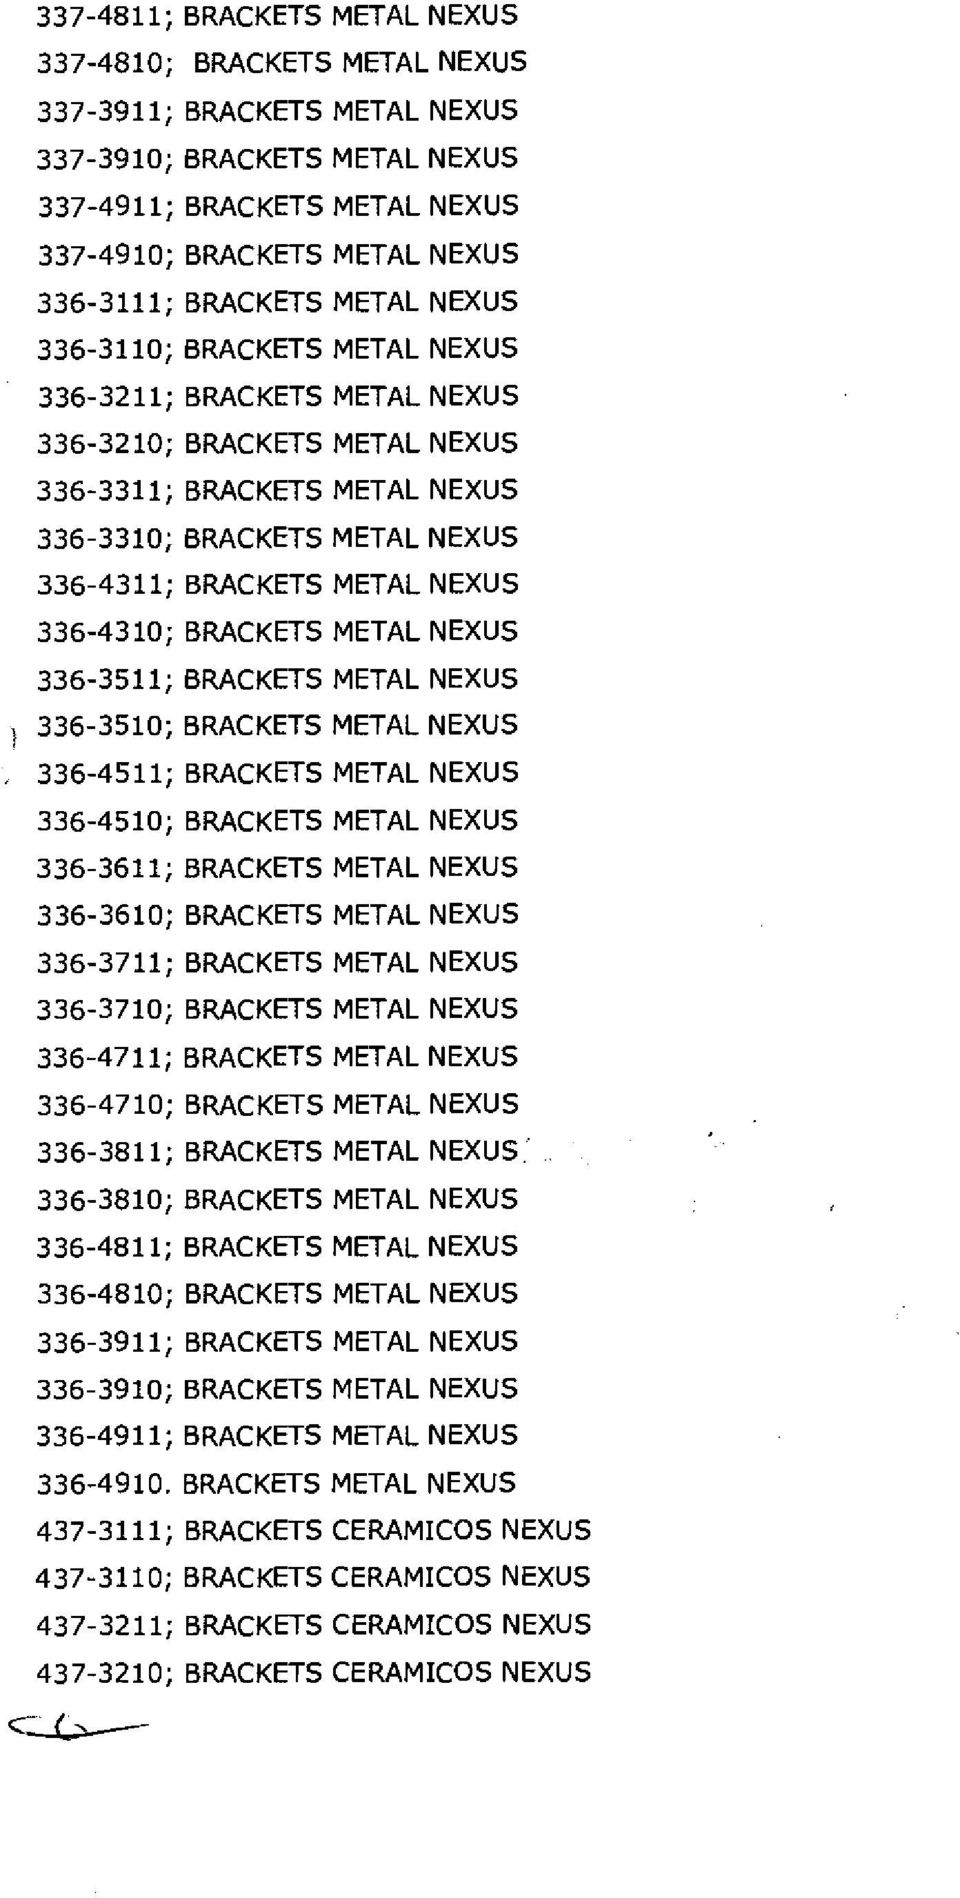 METAL NEXUS 336-4310; BRACKETS METAL NEXUS 336-3511; BRACKETS METAL NEXUS 336-3510; BRACKETS METAL NEXUS 336-4511; BRACKETS METAL NEXUS 336-4510; BRACKETS METAL NEXUS 336-3611; BRACKETS METAL NEXUS